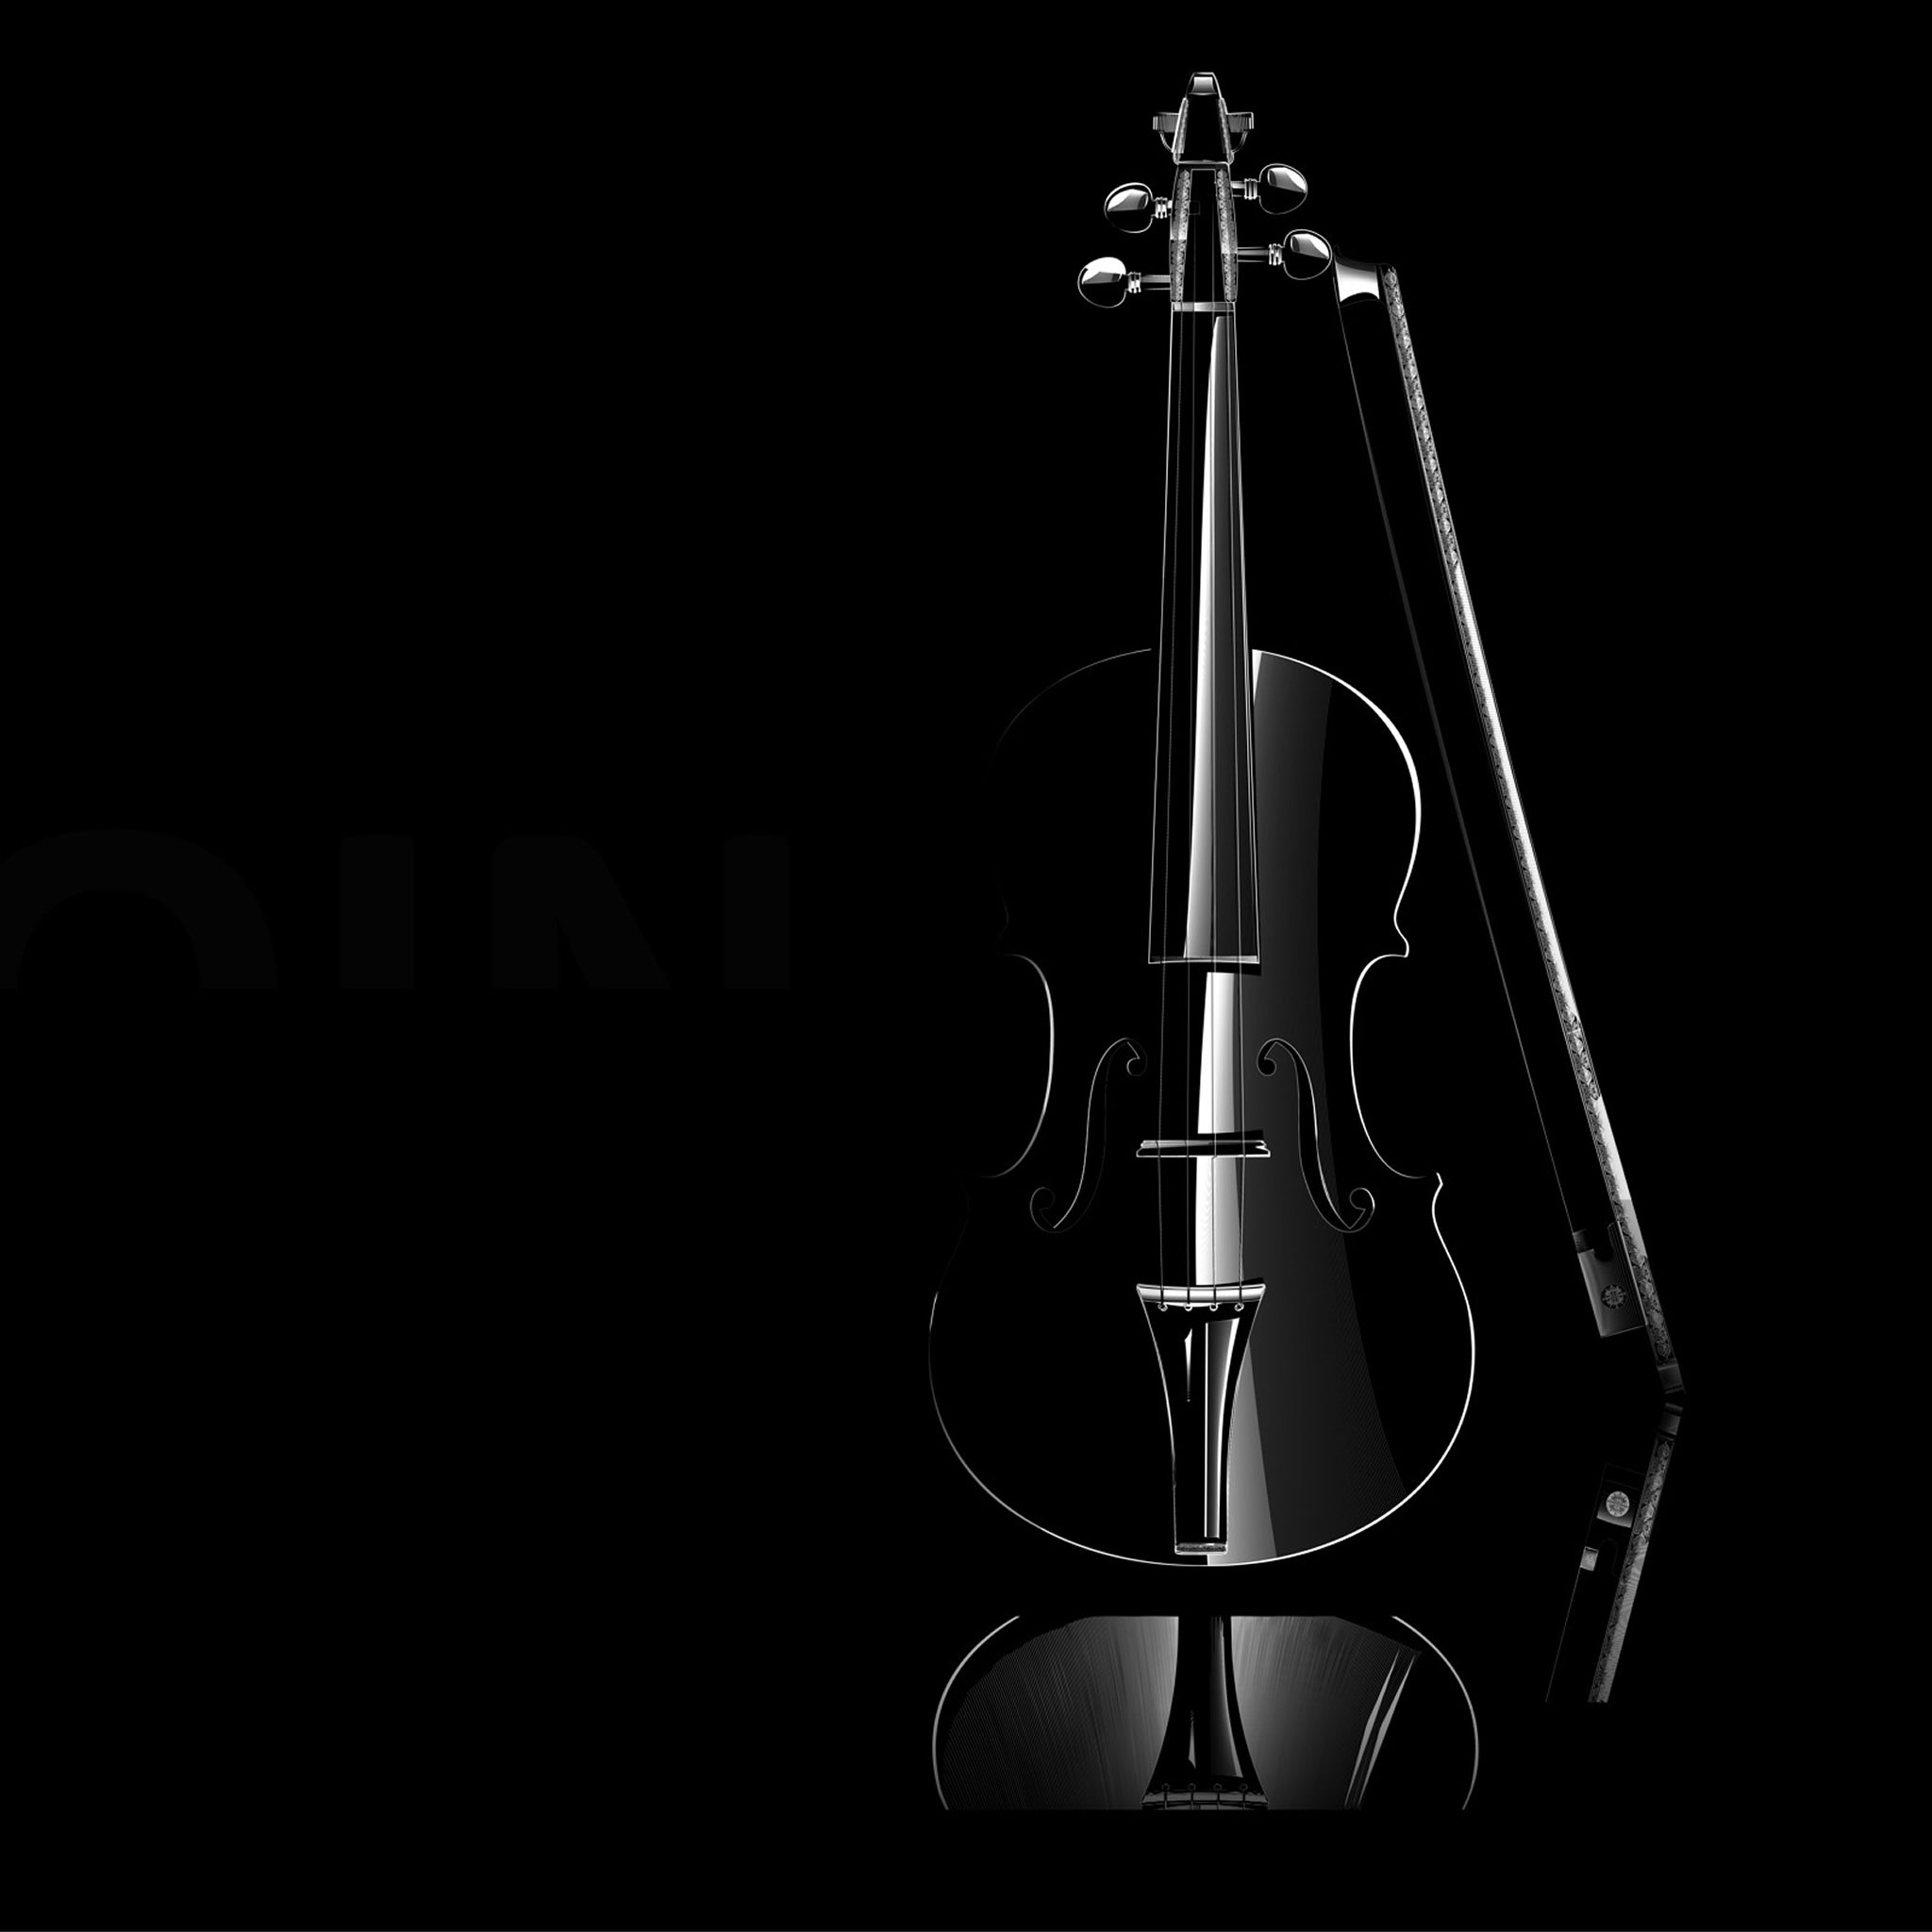 Mozart-Violin.jpg